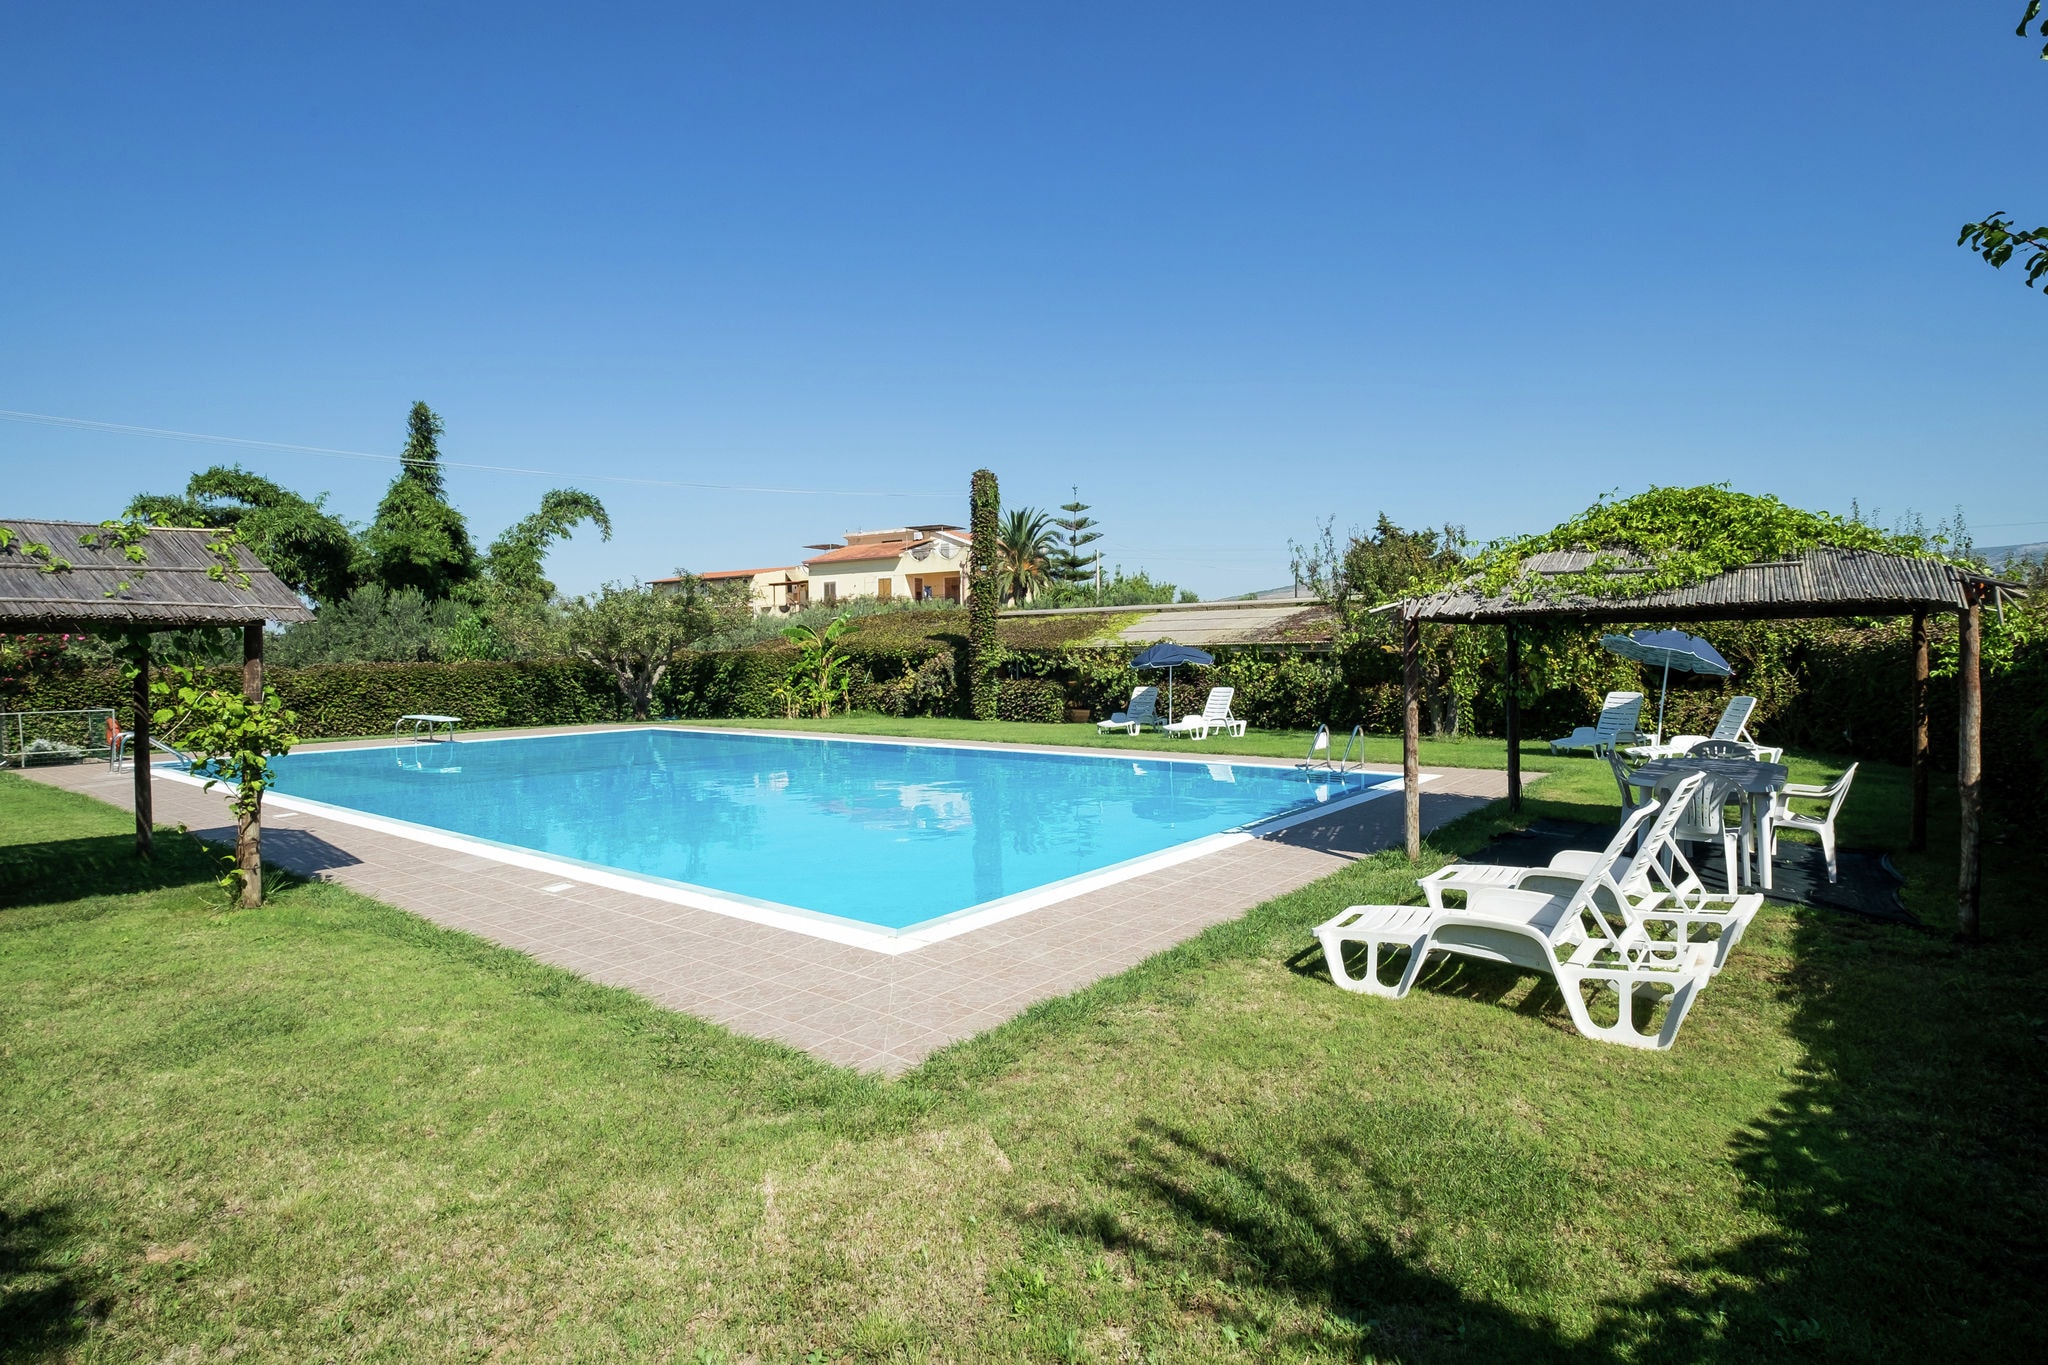 Goed verzorgde vakantiewoning op Sicilië met zwembad en tuin